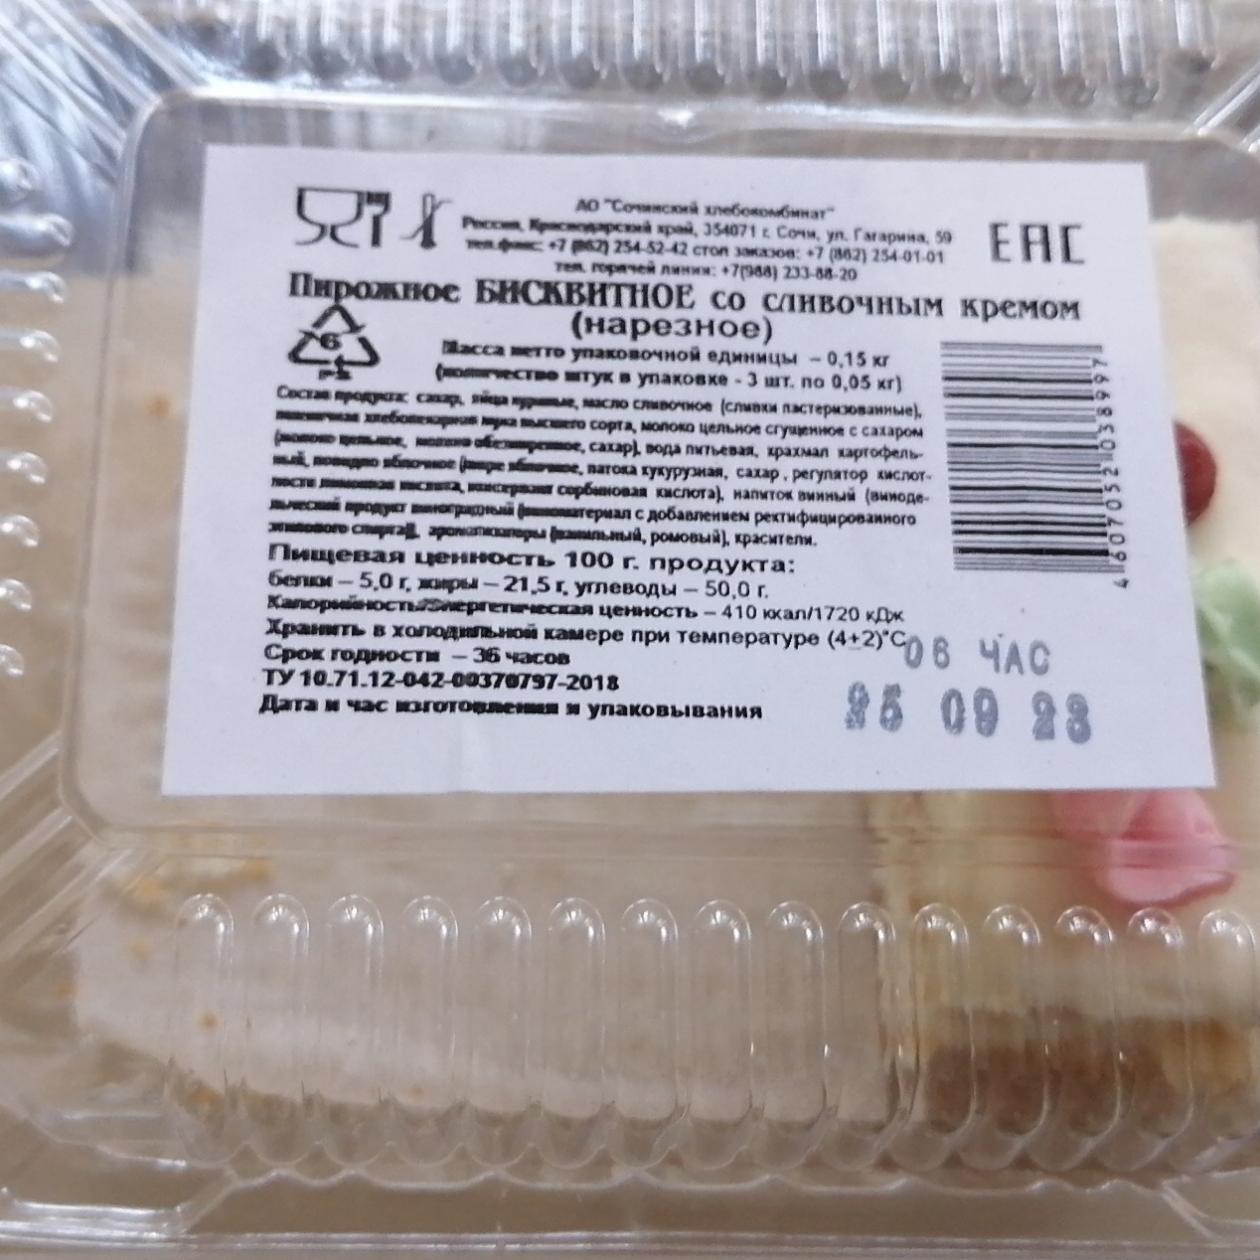 Фото - Пироженое бисквитное со сливочным кремом Сочинский хлебокомбинат